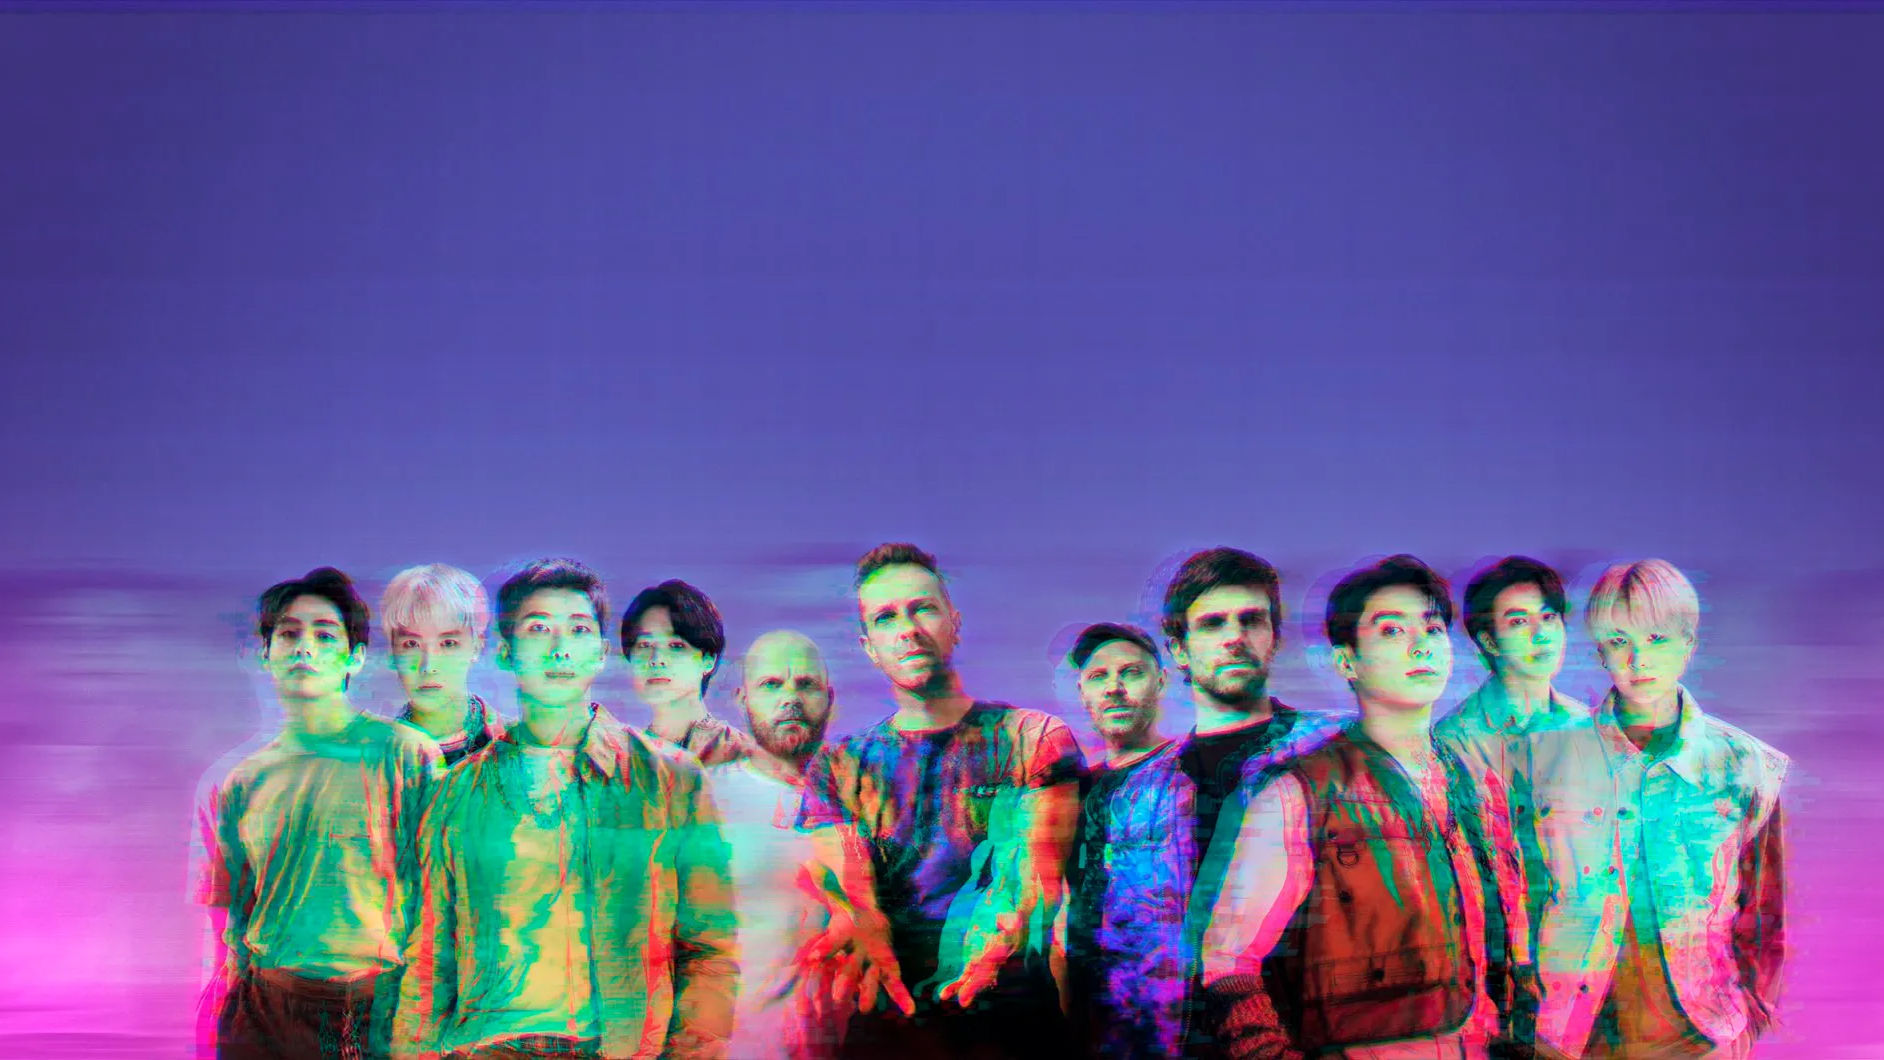 Sneak peek at BTS, Coldplay’s single ‘My Universe’. Watch